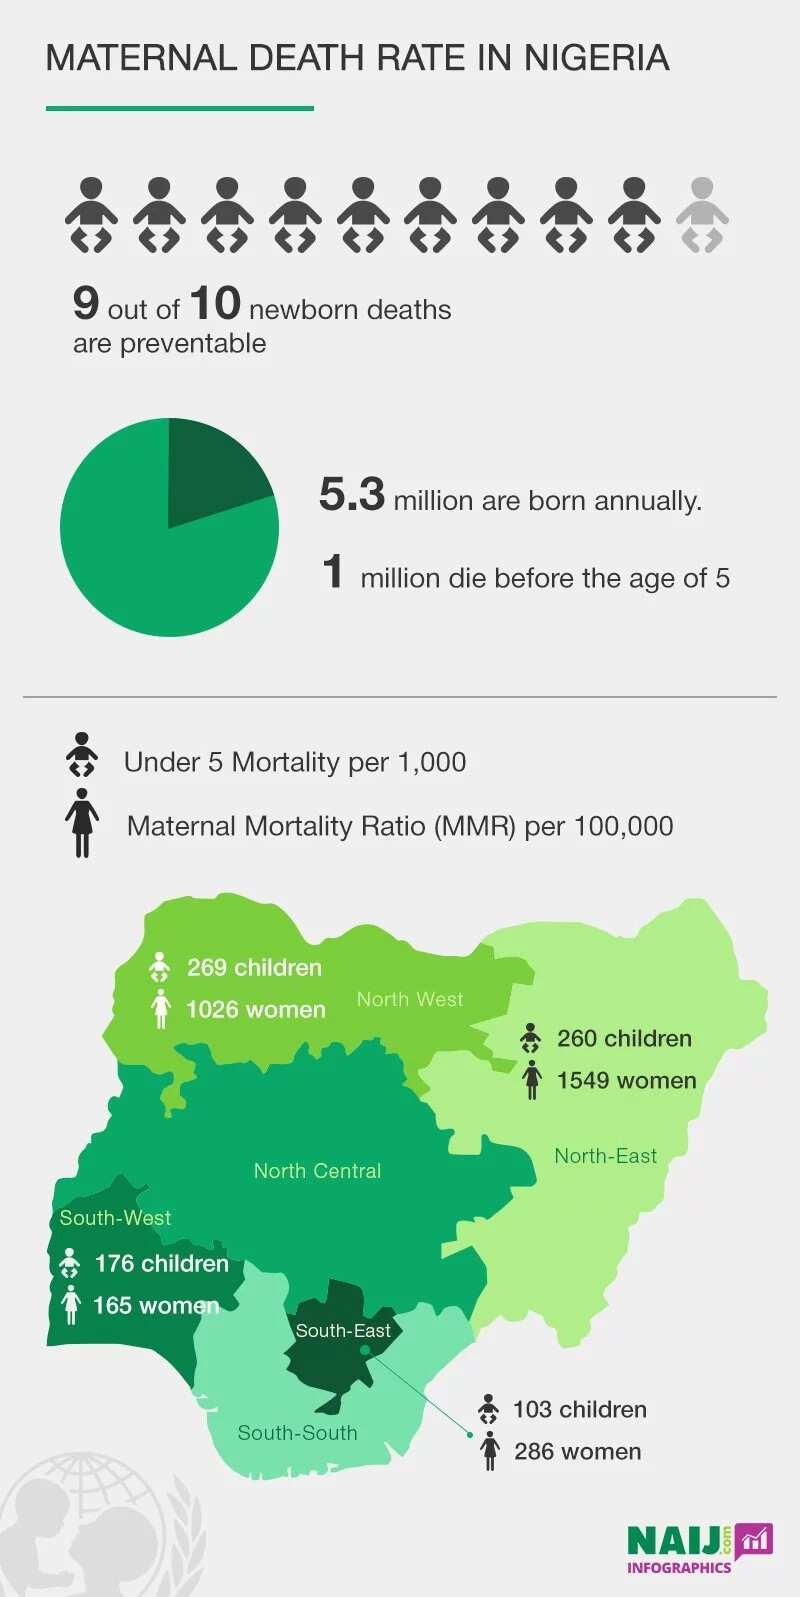 Maternal death rate in Nigeria